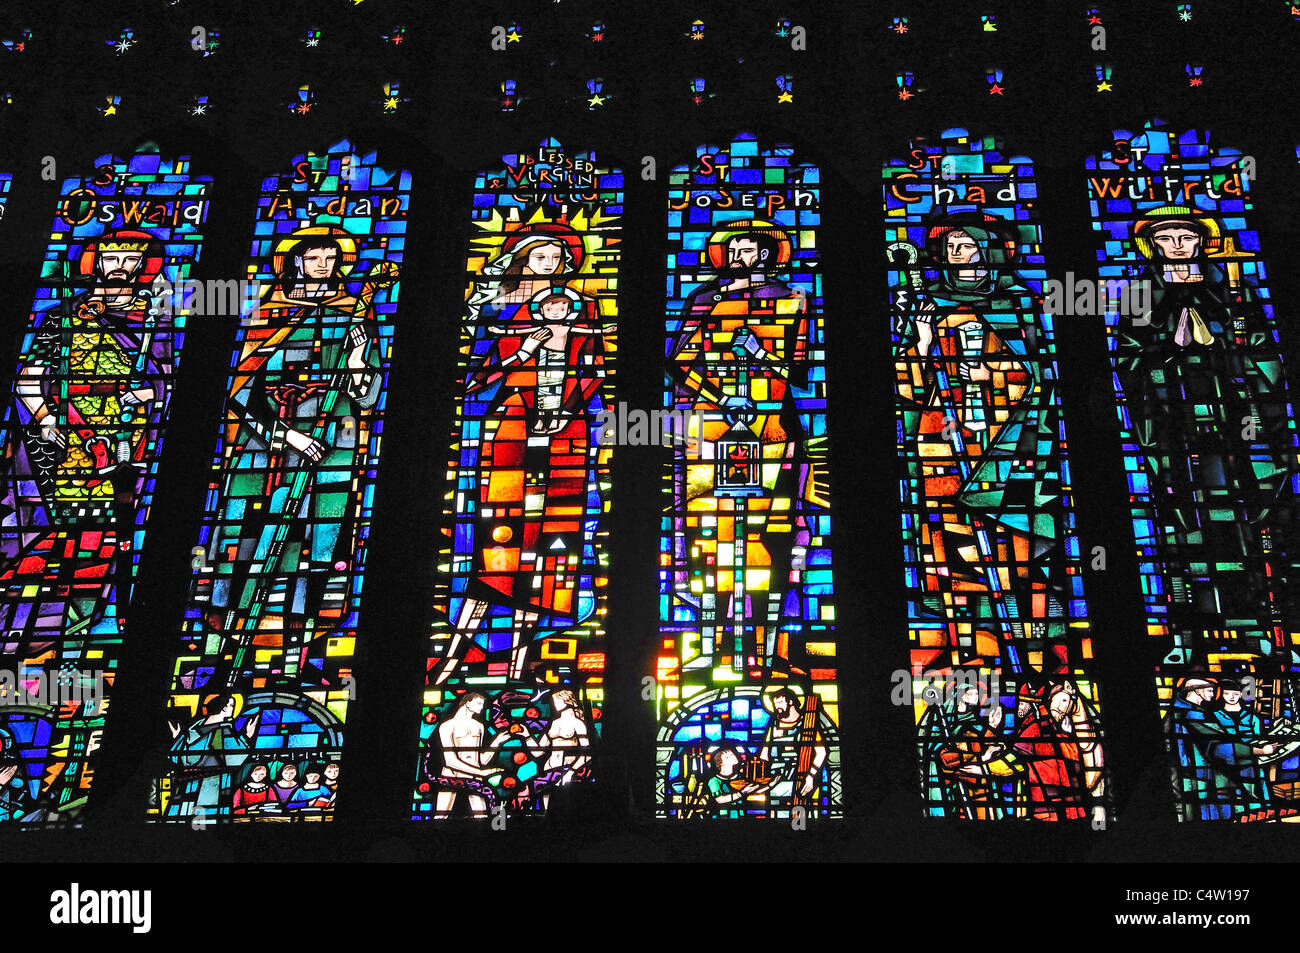 La fenêtre de l'ouest, la cathédrale de Chester, Chester, Cheshire, Angleterre, Royaume-Uni Banque D'Images